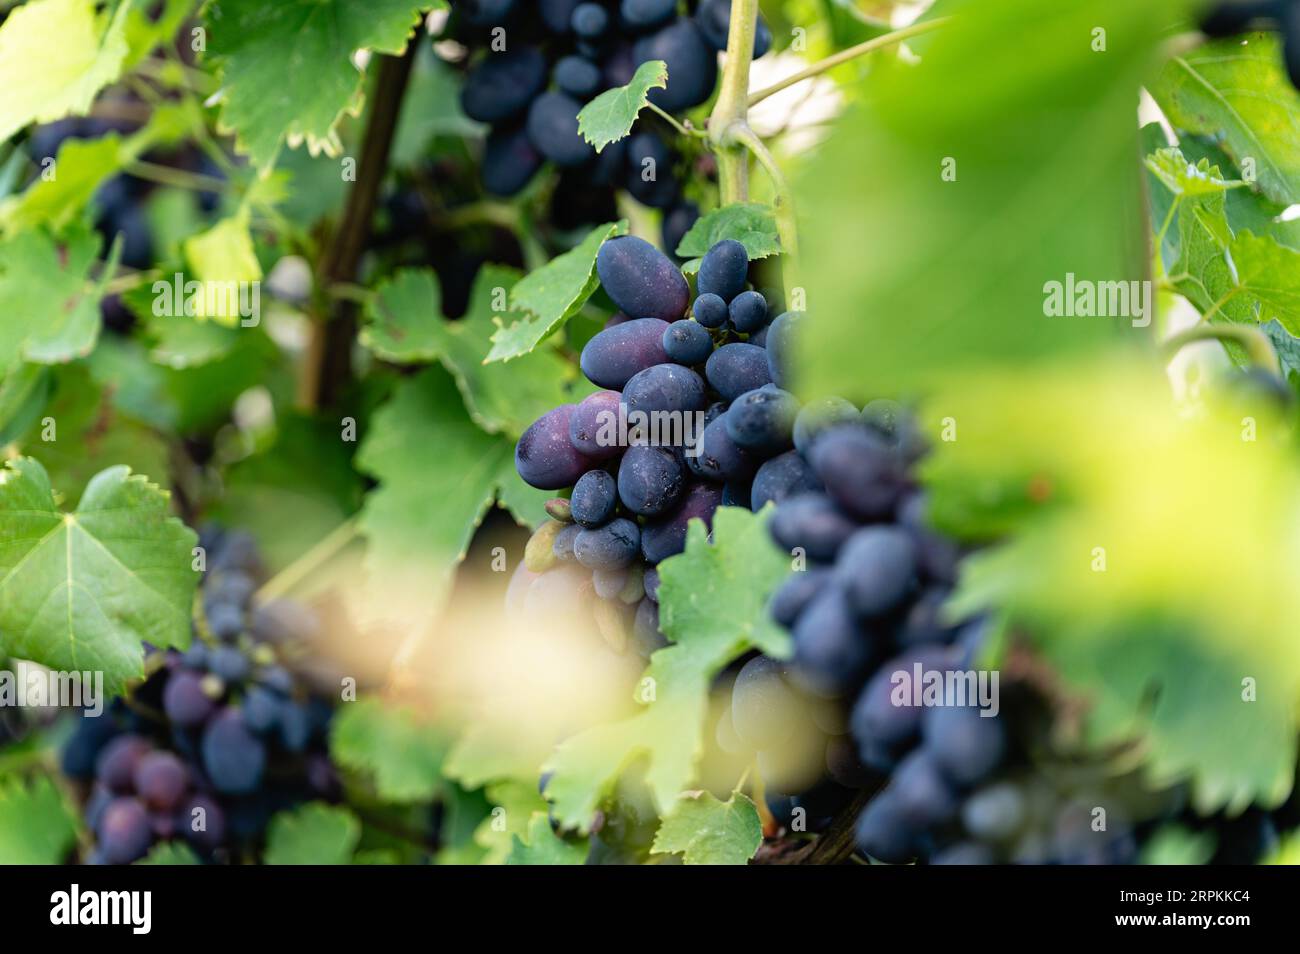 Primo piano di grandi grappoli di uva rossa appesi e pronti per la raccolta. Vigneto per la produzione di vino. Foto Stock